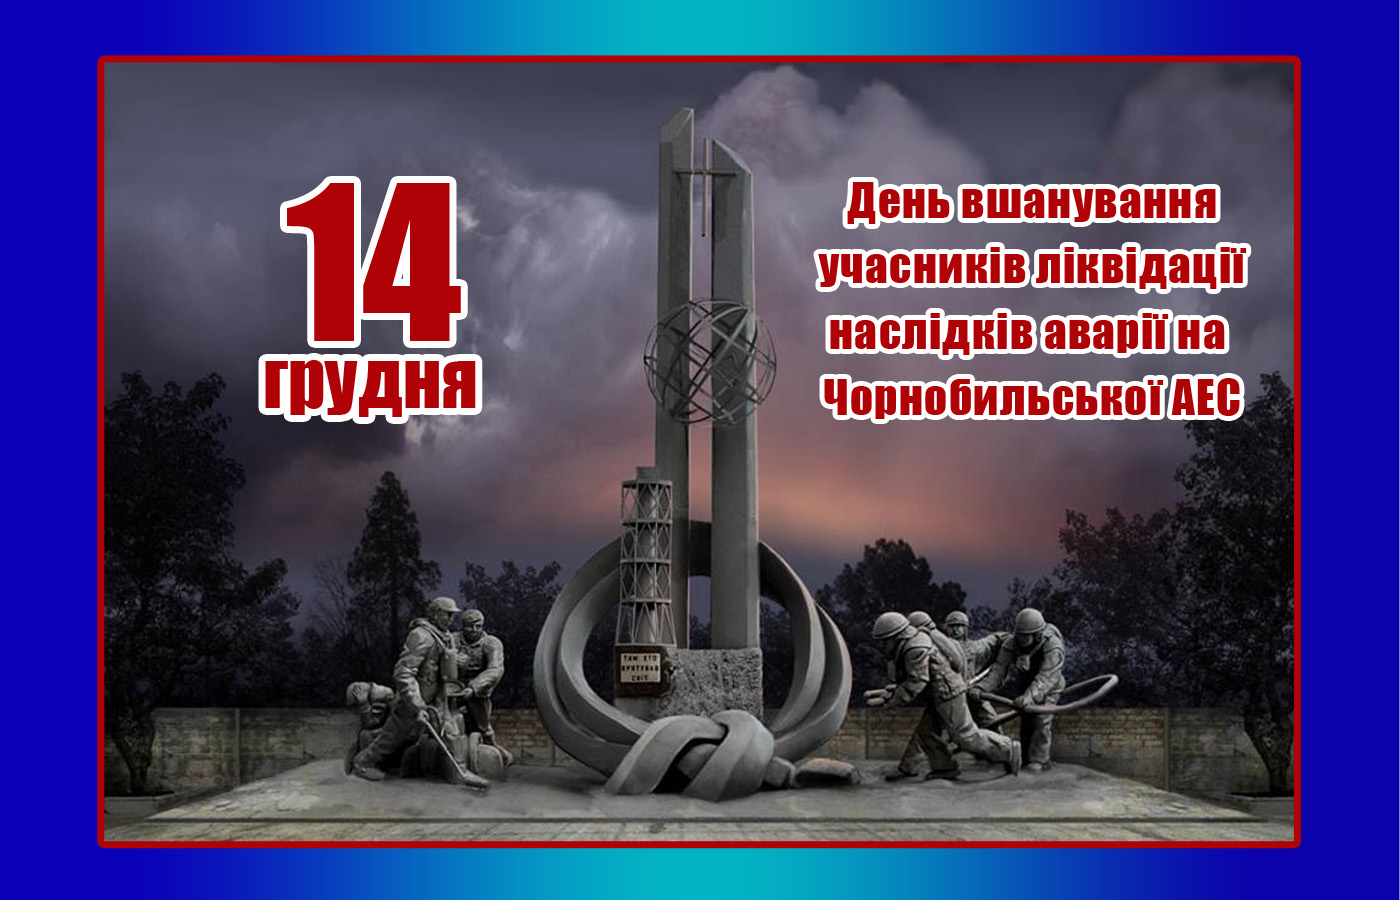 14 грудня “День вшанування учасників ліквідації наслідків аварії на Чорнобильській АЕС”